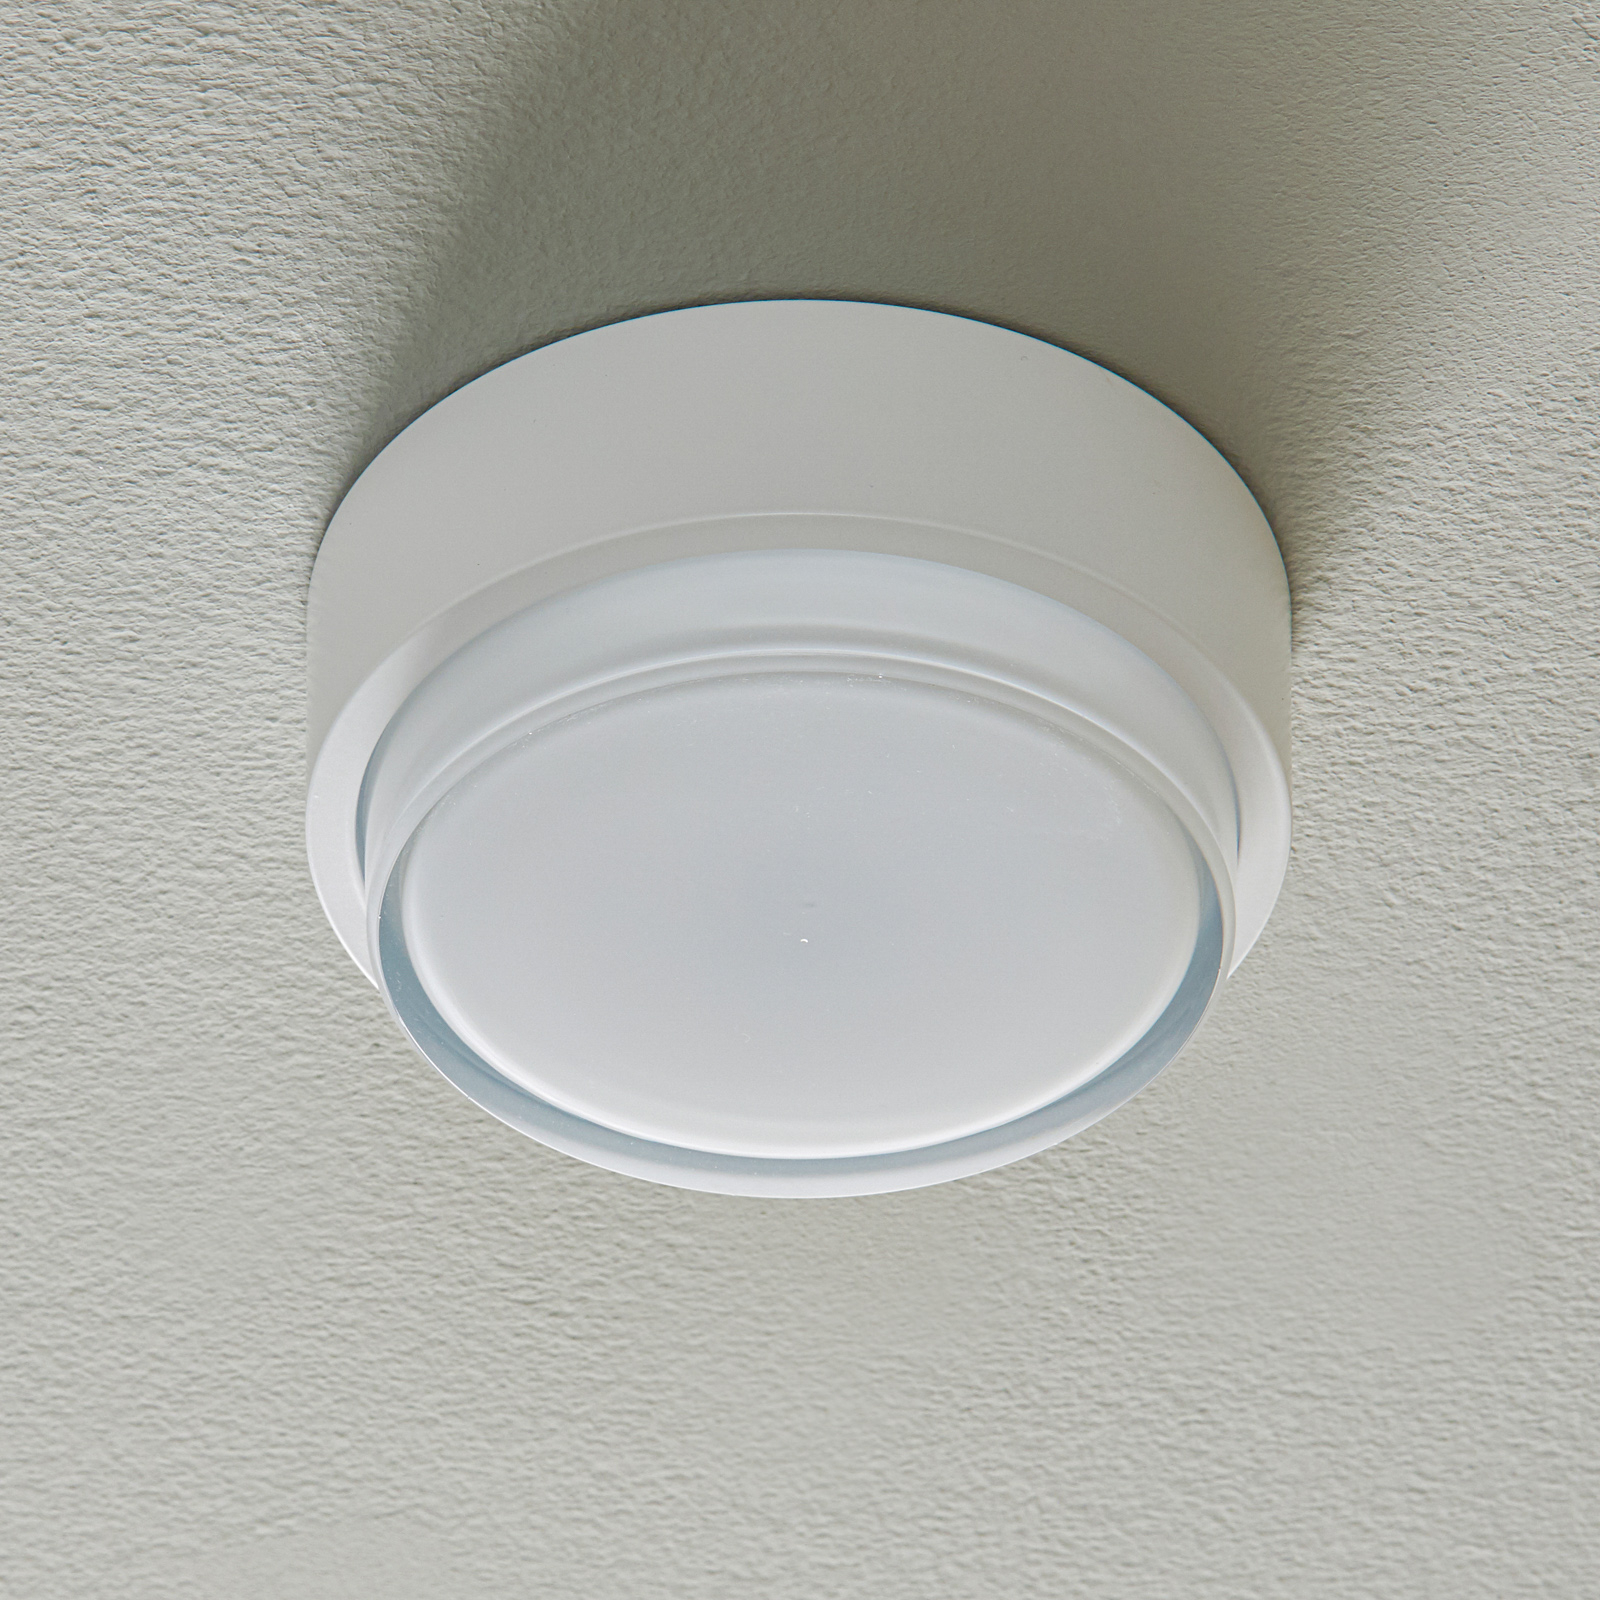 BEGA 50535 LED ceiling light 930 white Ø 15.5 cm